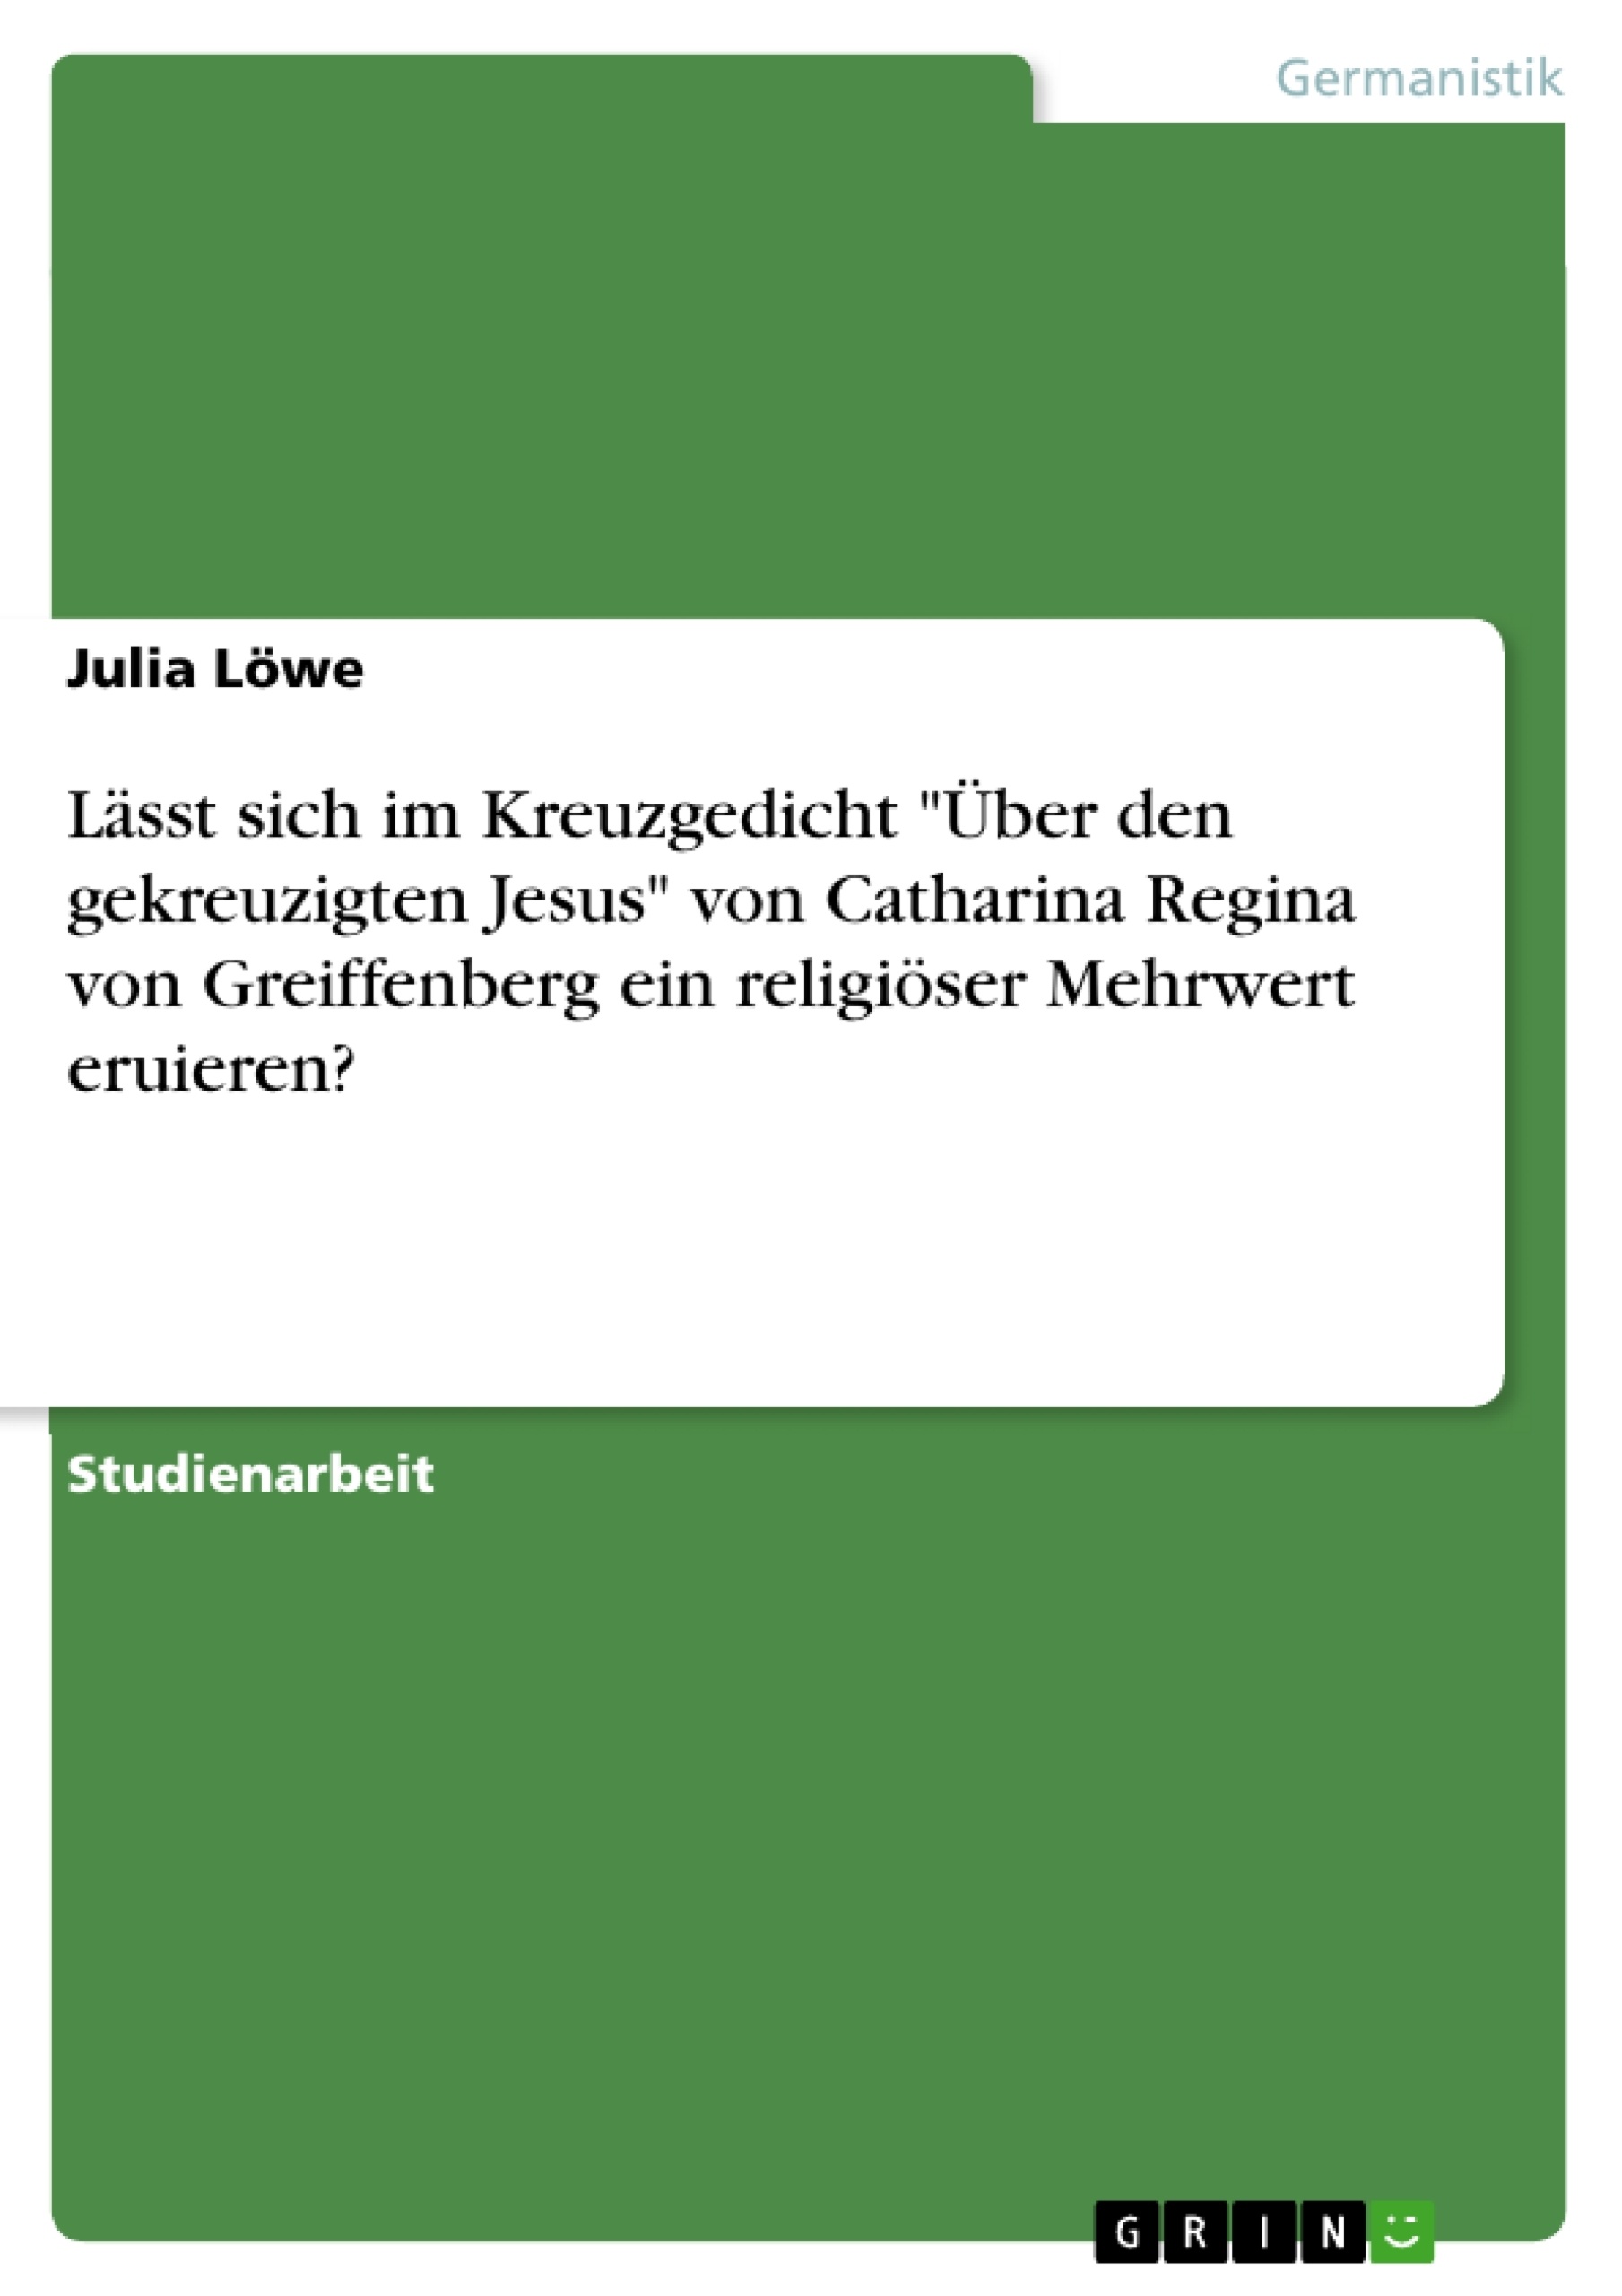 Title: Lässt sich im Kreuzgedicht "Über den gekreuzigten Jesus" von Catharina Regina von Greiffenberg ein religiöser Mehrwert eruieren?